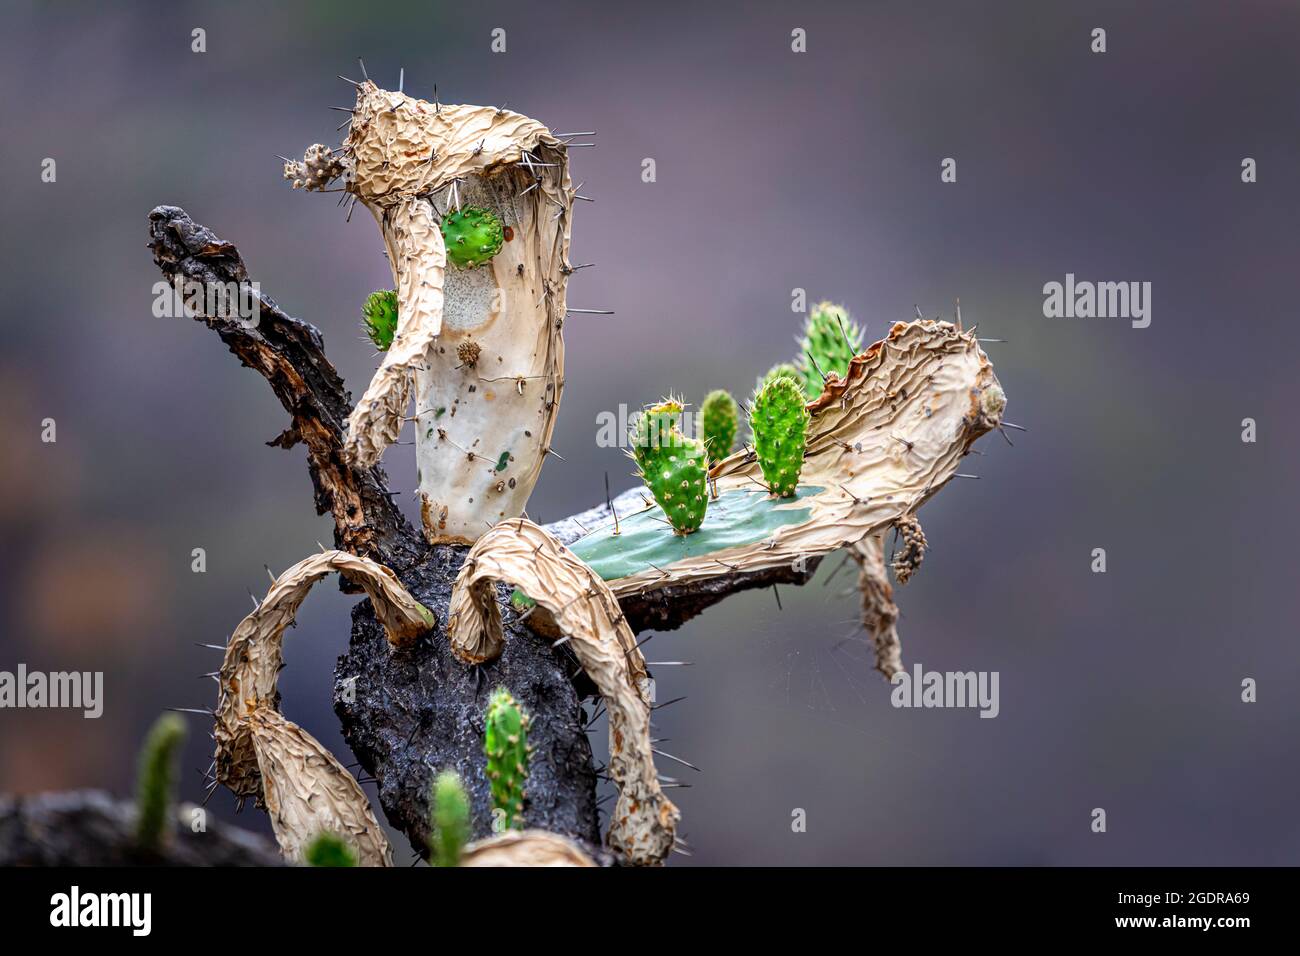 Il piccolo cactus di Prickly Pear cresce su un adulto danneggiato dal fuoco vicino a Morelia, Michoacan, Messico. Foto Stock